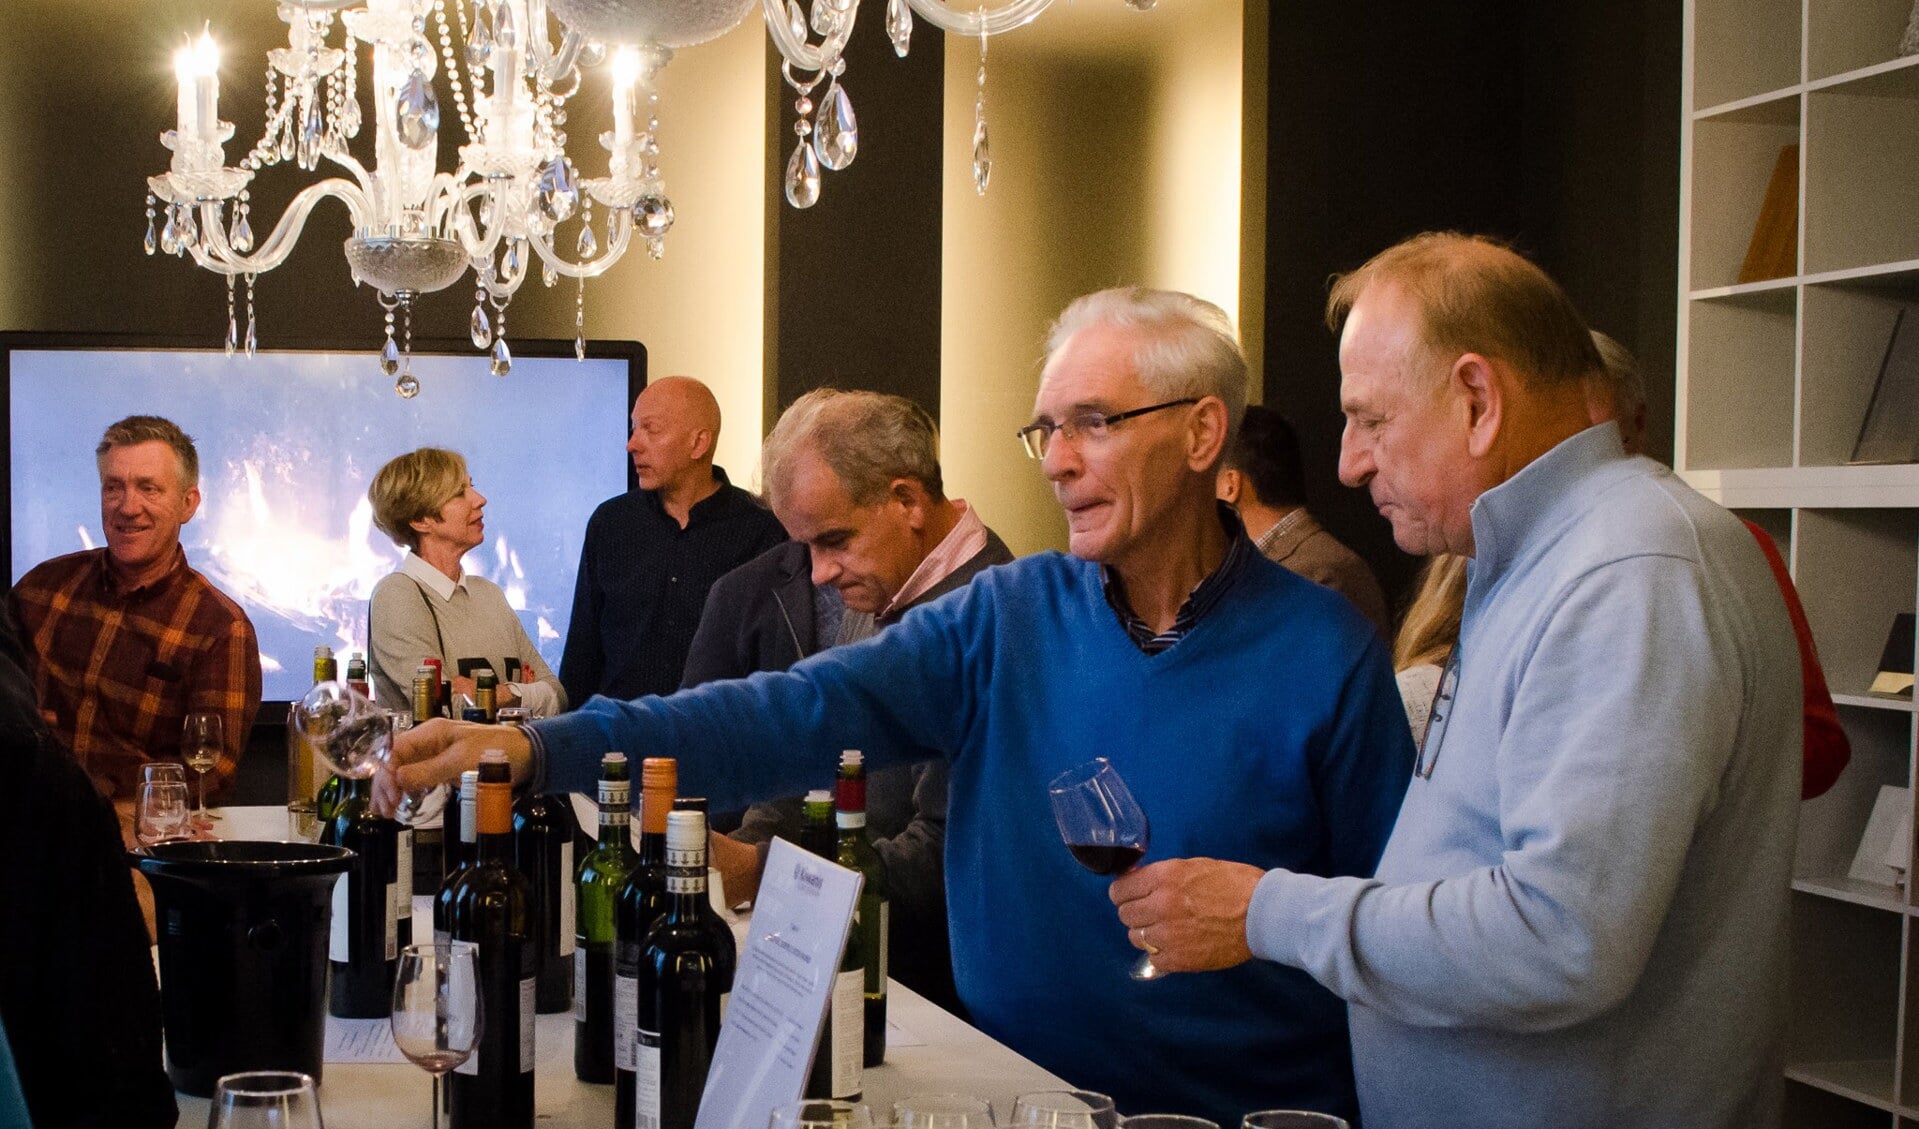 Deze wijnproeverij vindt plaats op zondag 17 juni van 15.00 uur tot 18.00 uur in Brasserie Eat & Meet, 't Erf 14 in Leusden.